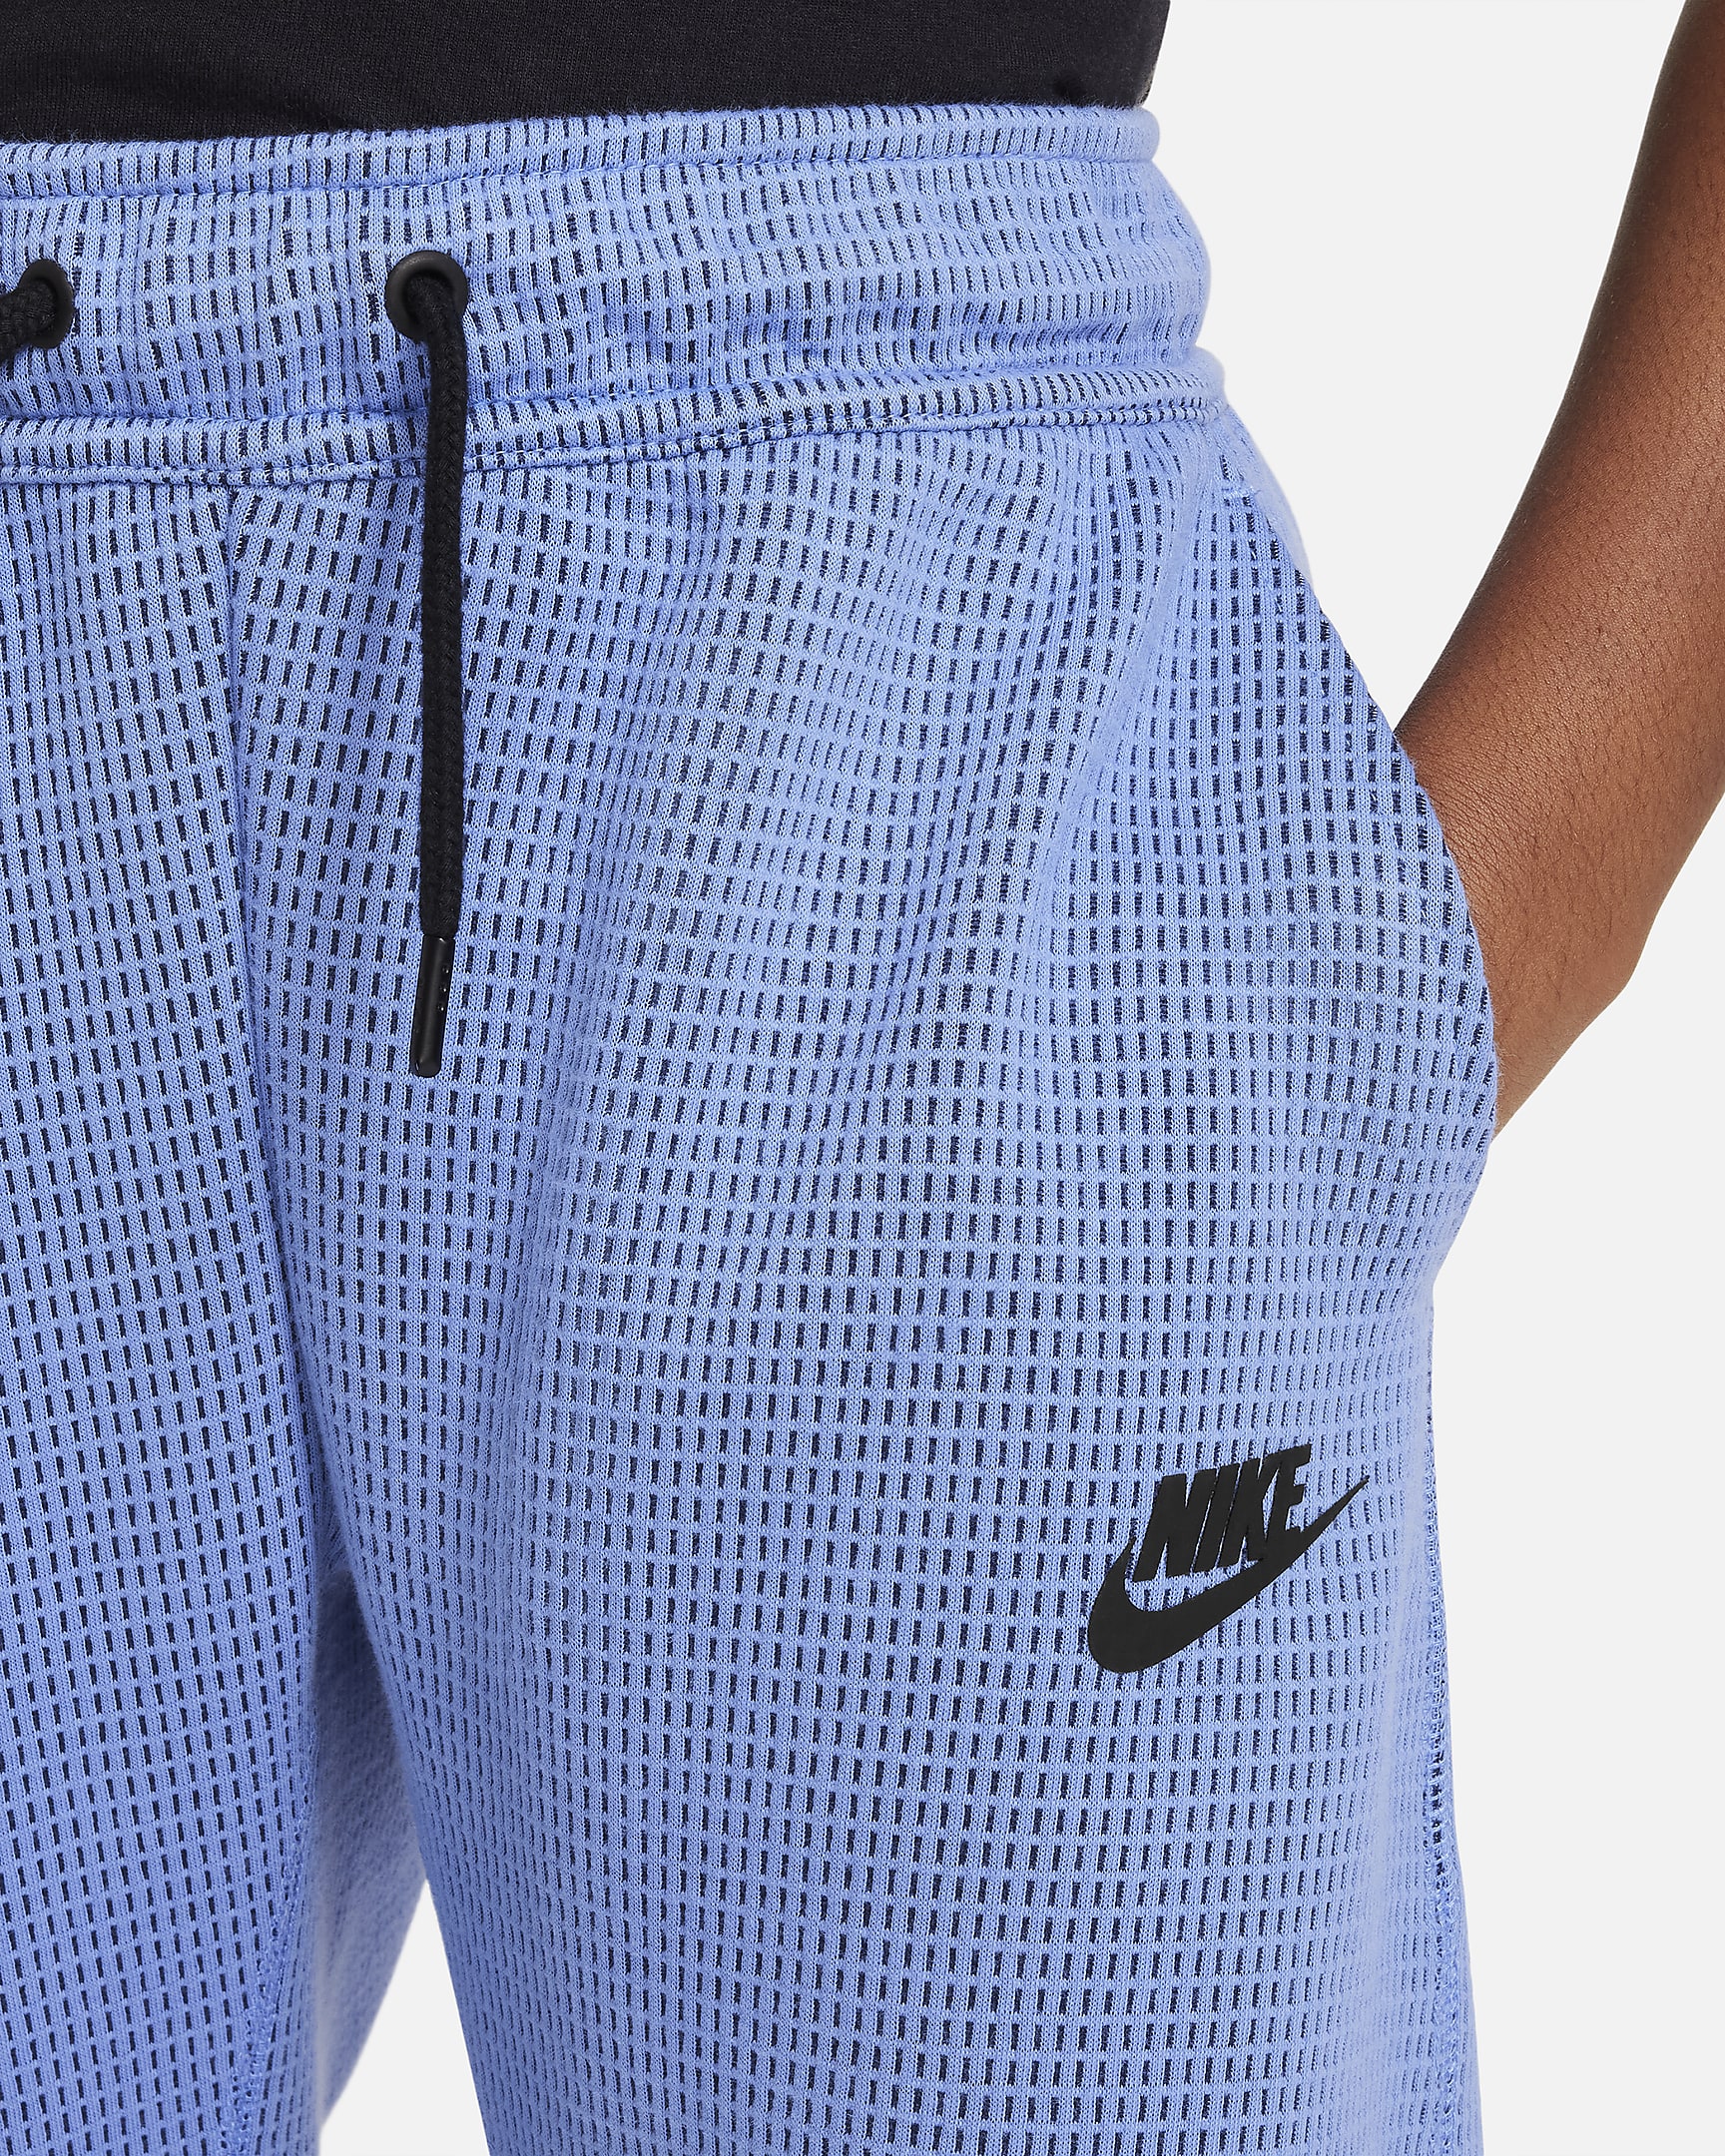 Nike Sportswear Tech Fleece Older Kids' (Boys') Winterized Trousers ...